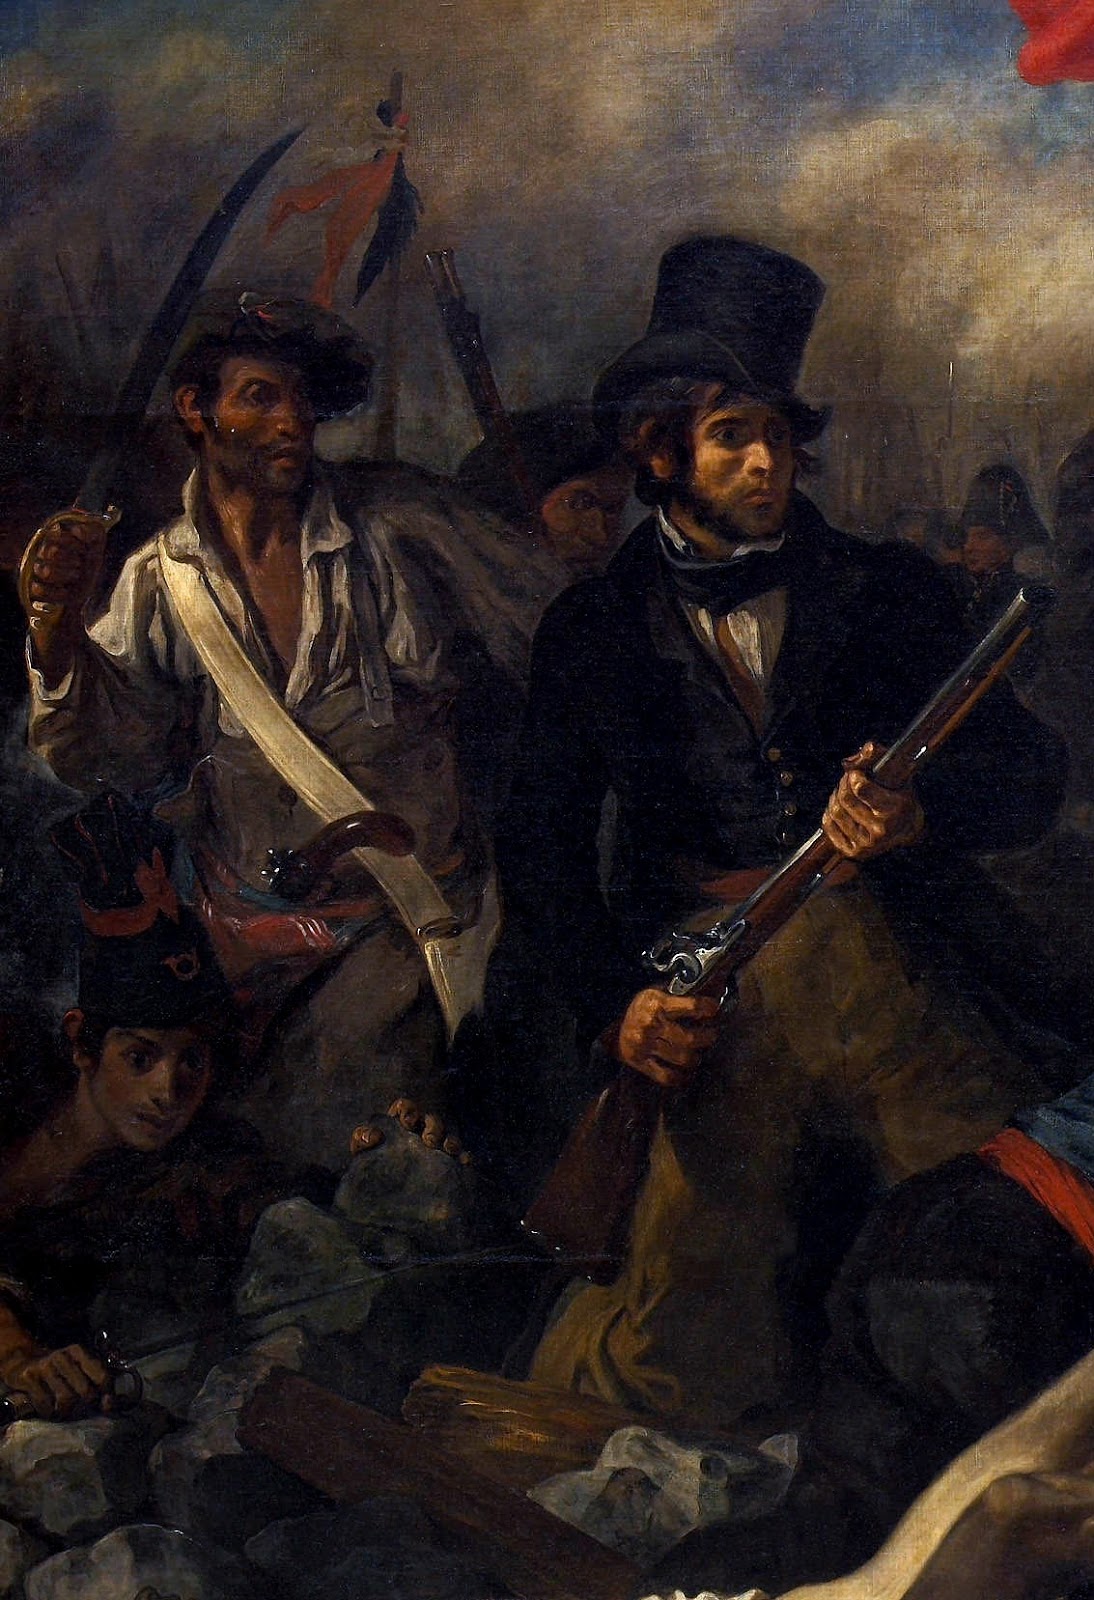 Eugene+Delacroix-1798-1863 (159).jpg